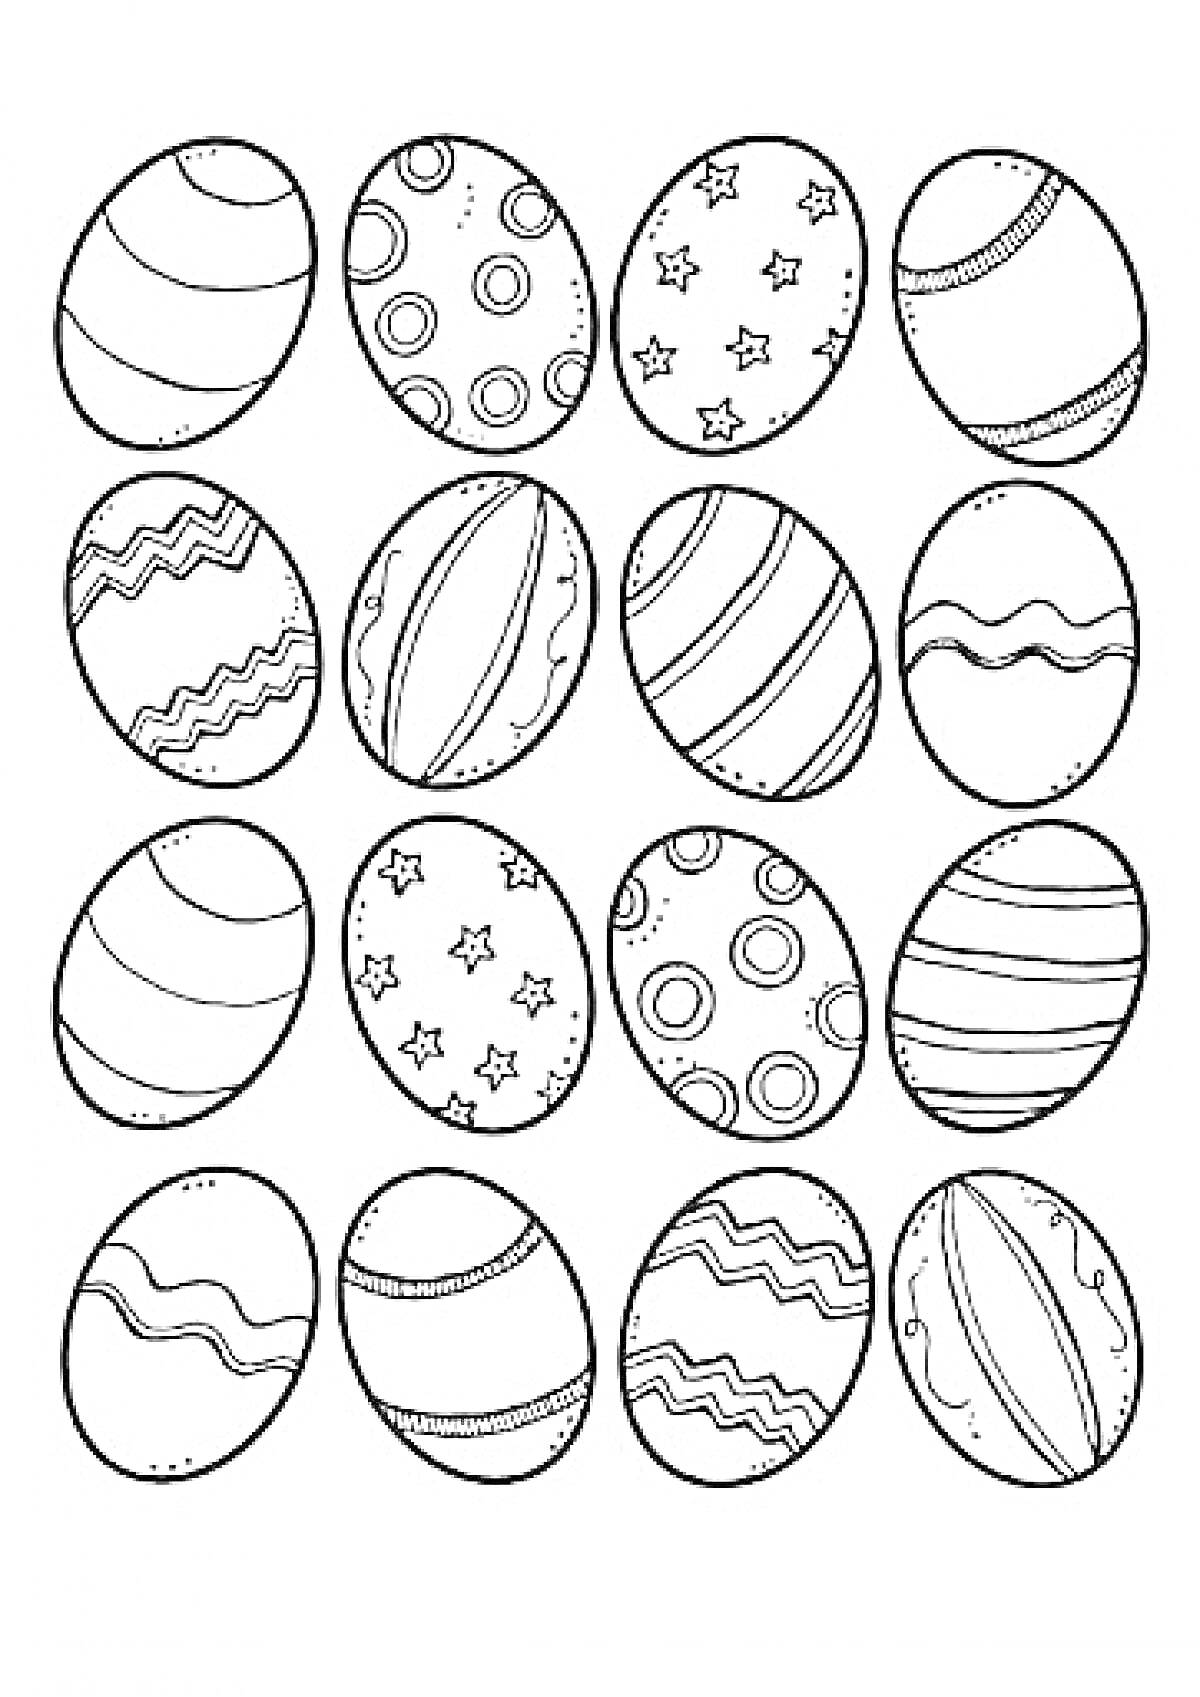 Пасхальные яйца с геометрическими узорами, звёздами, волнистыми линиями и кругами